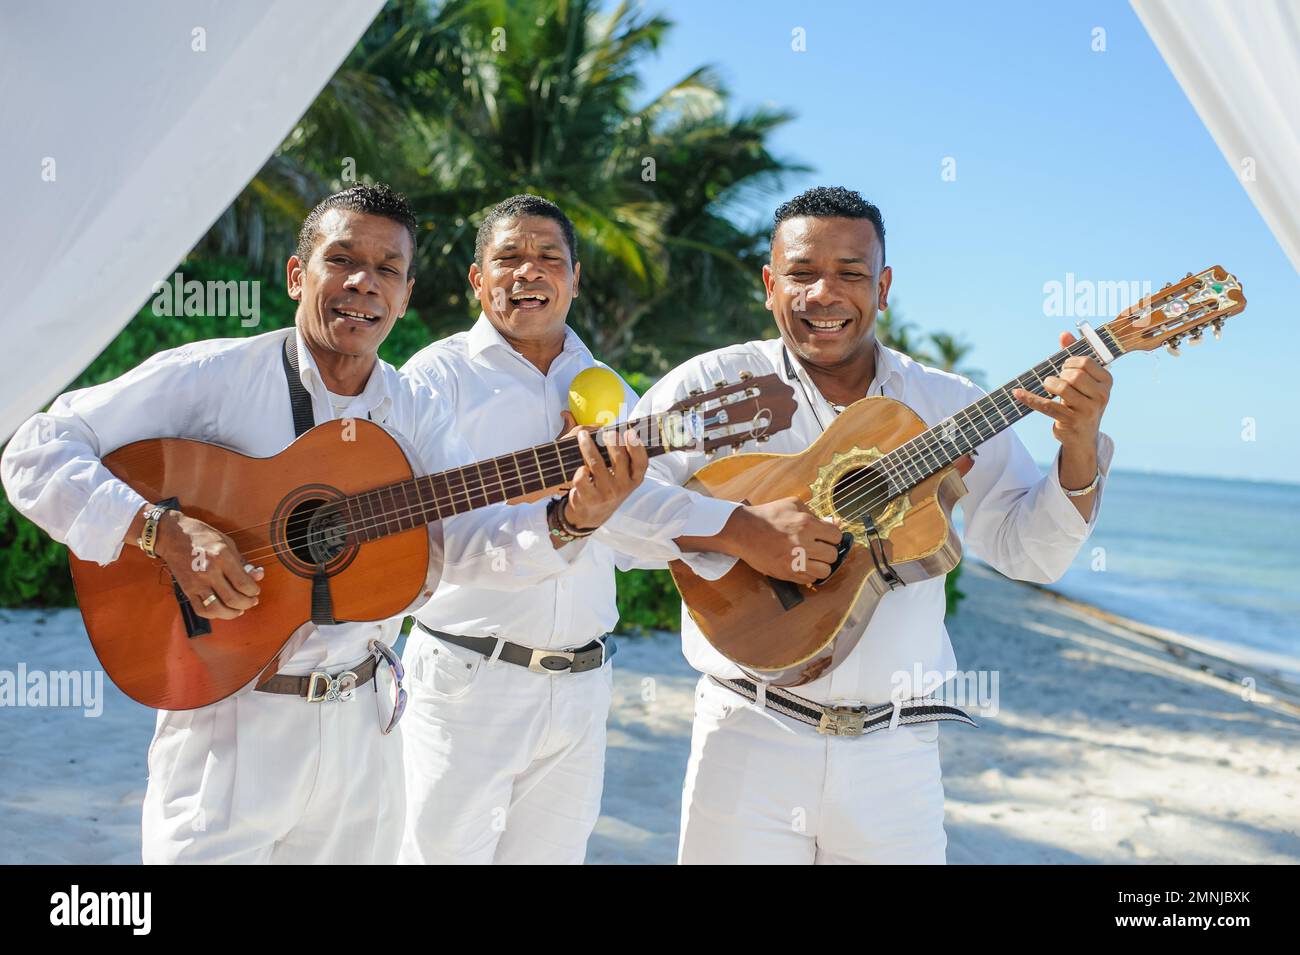 21.10.2014 musiciens de rue en République dominicaine. Plage de Punta cana Banque D'Images